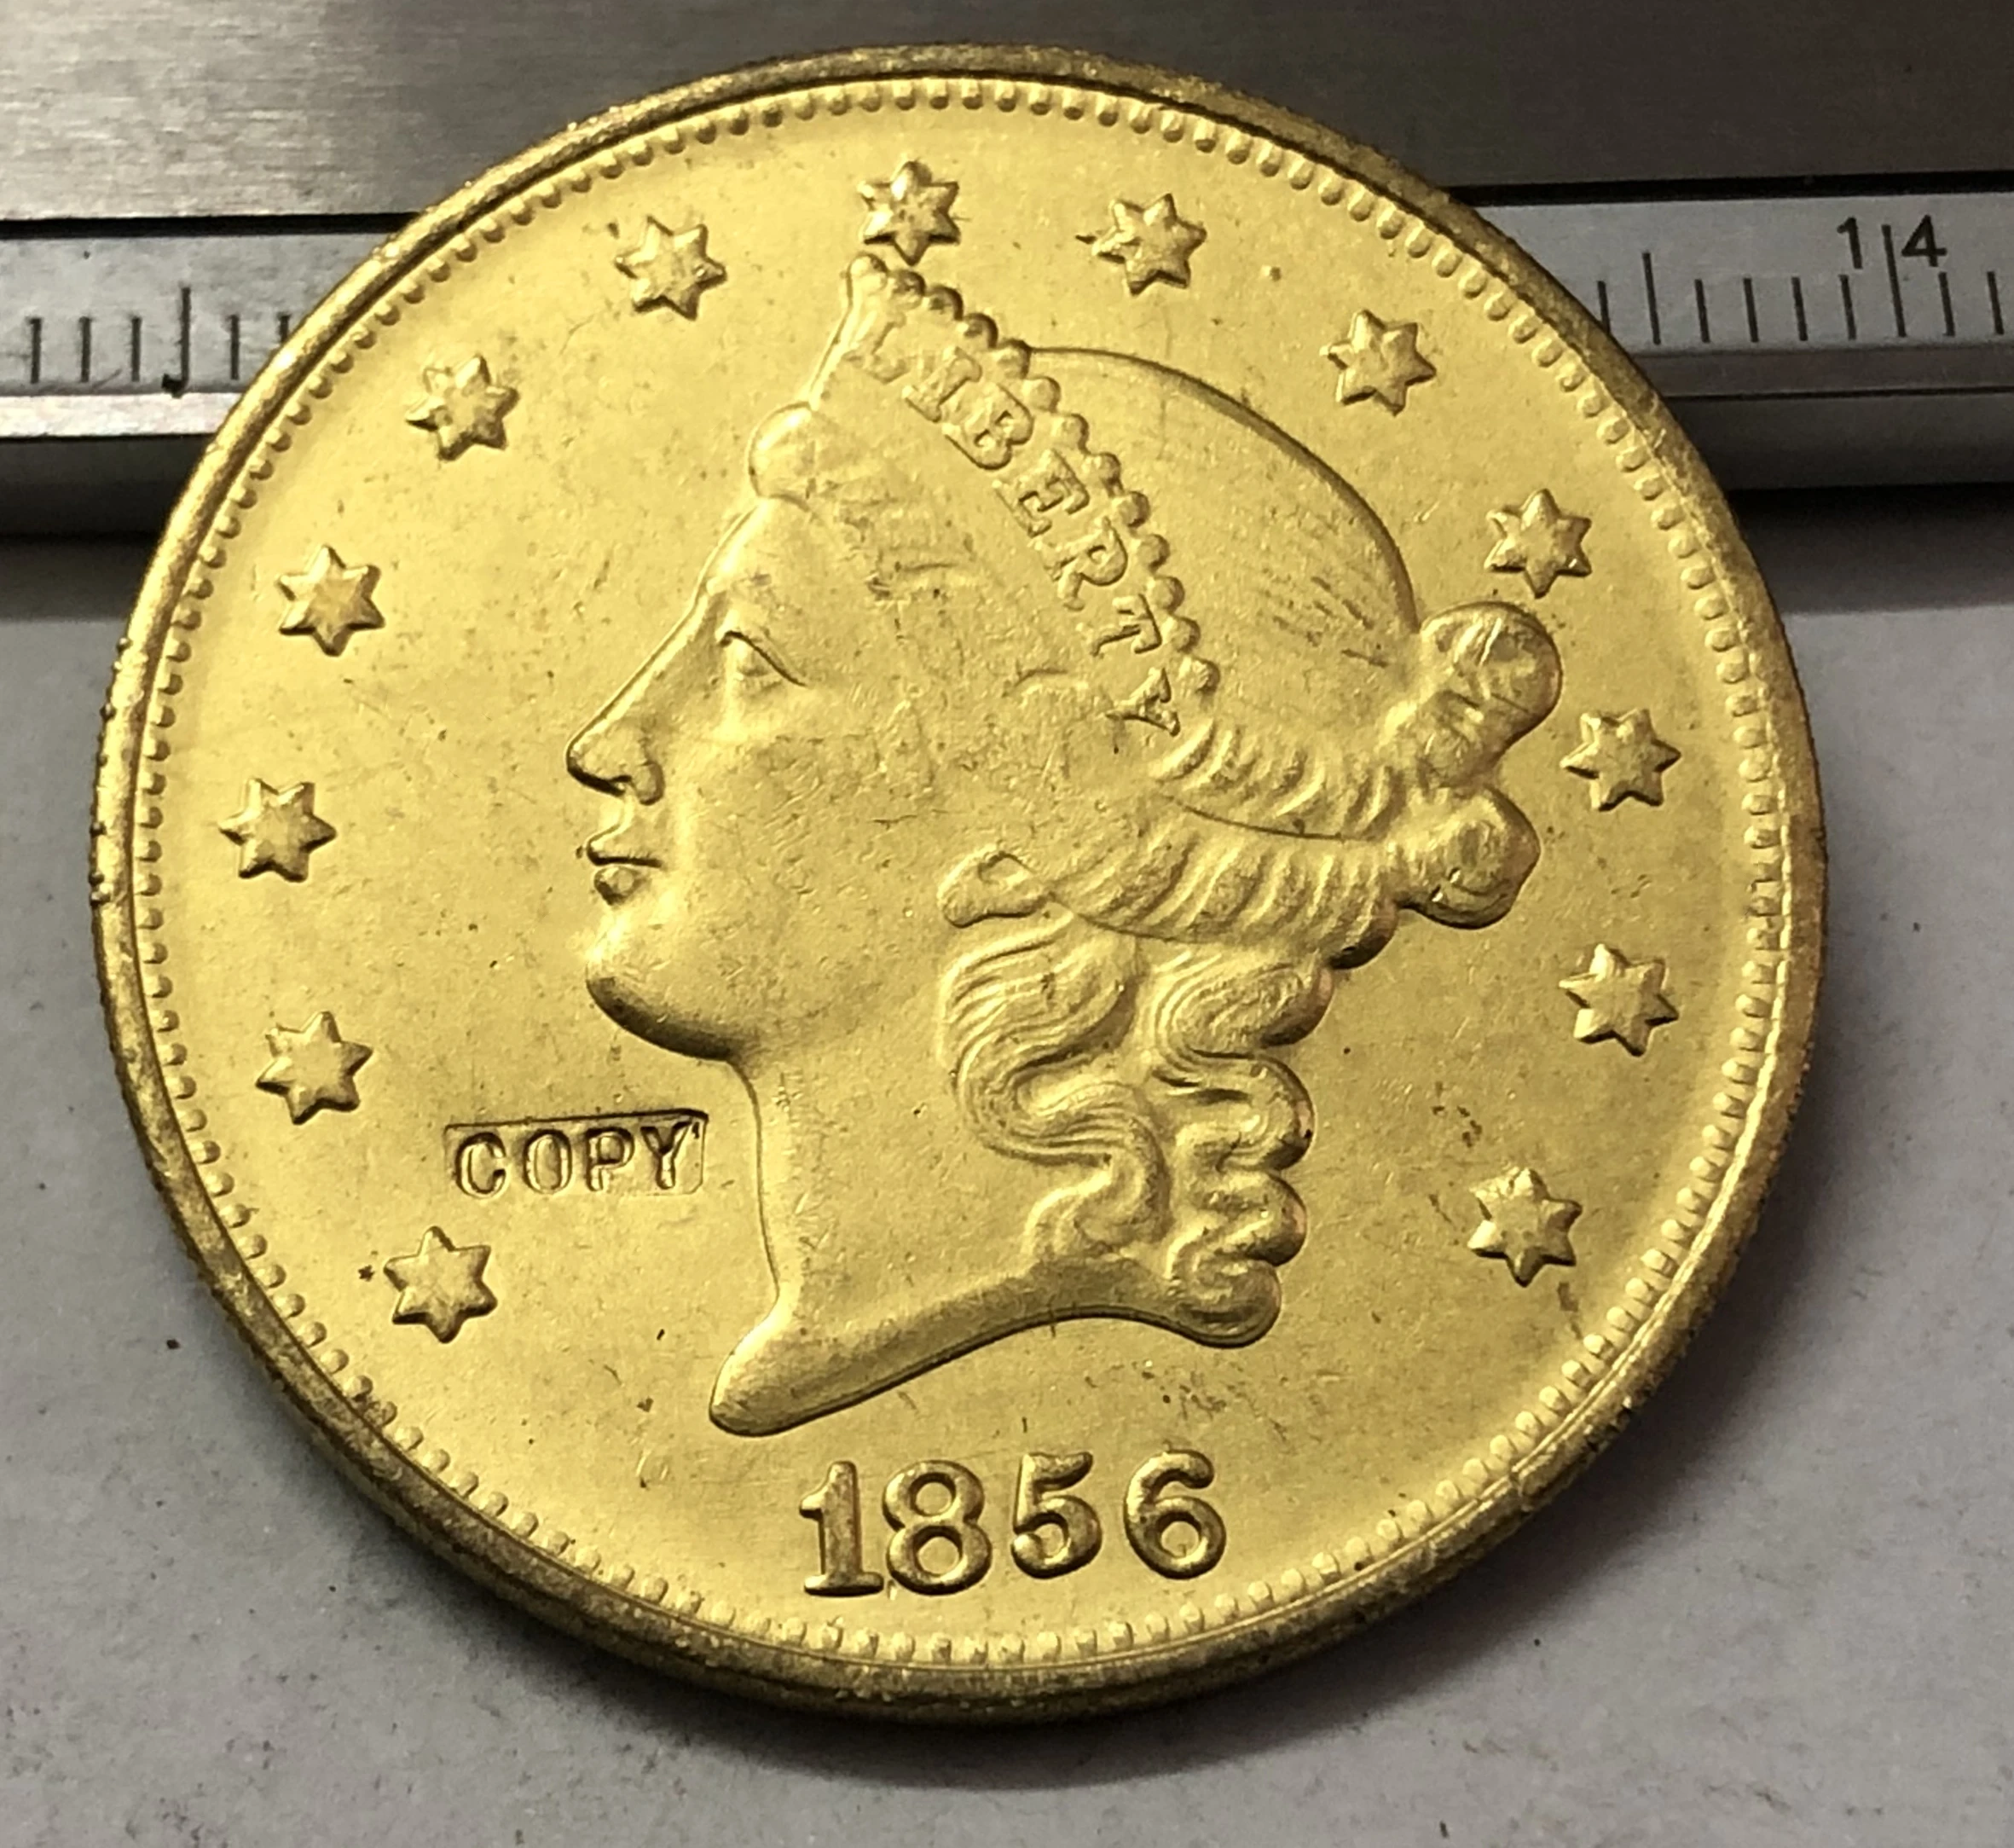 

1856 P.O.S США Свобода головы (без девиза на обратной стороне) Искусственная кожа позолоченная КОПИЯ монета